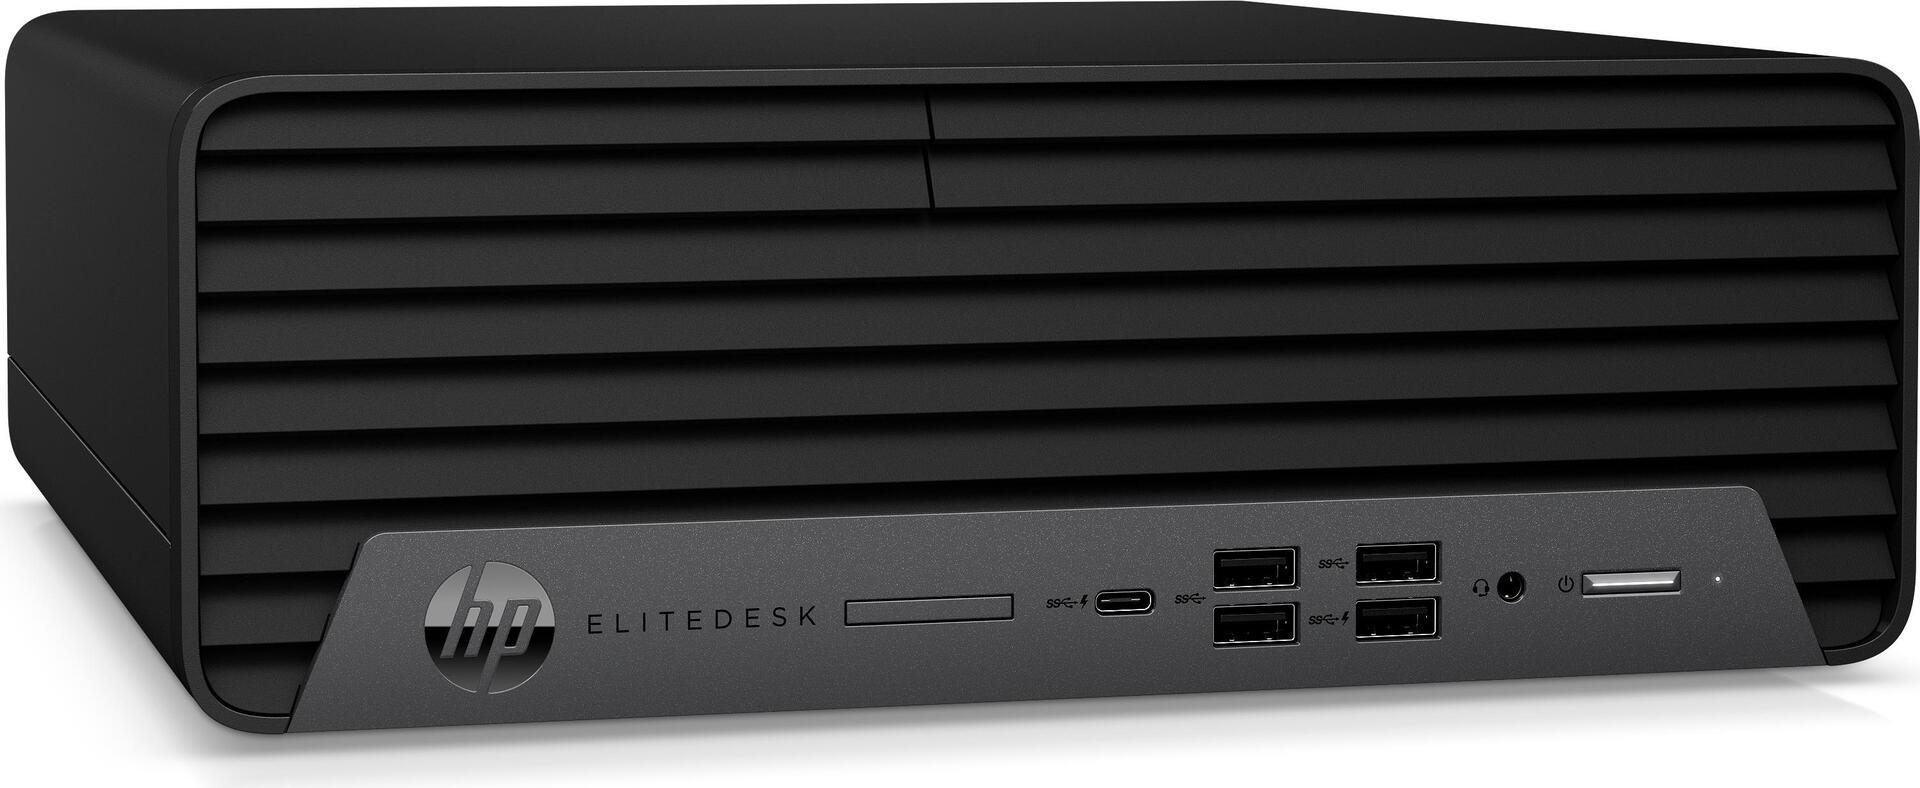 HP EliteDesk 805 G6 (273G6EA#ABD)